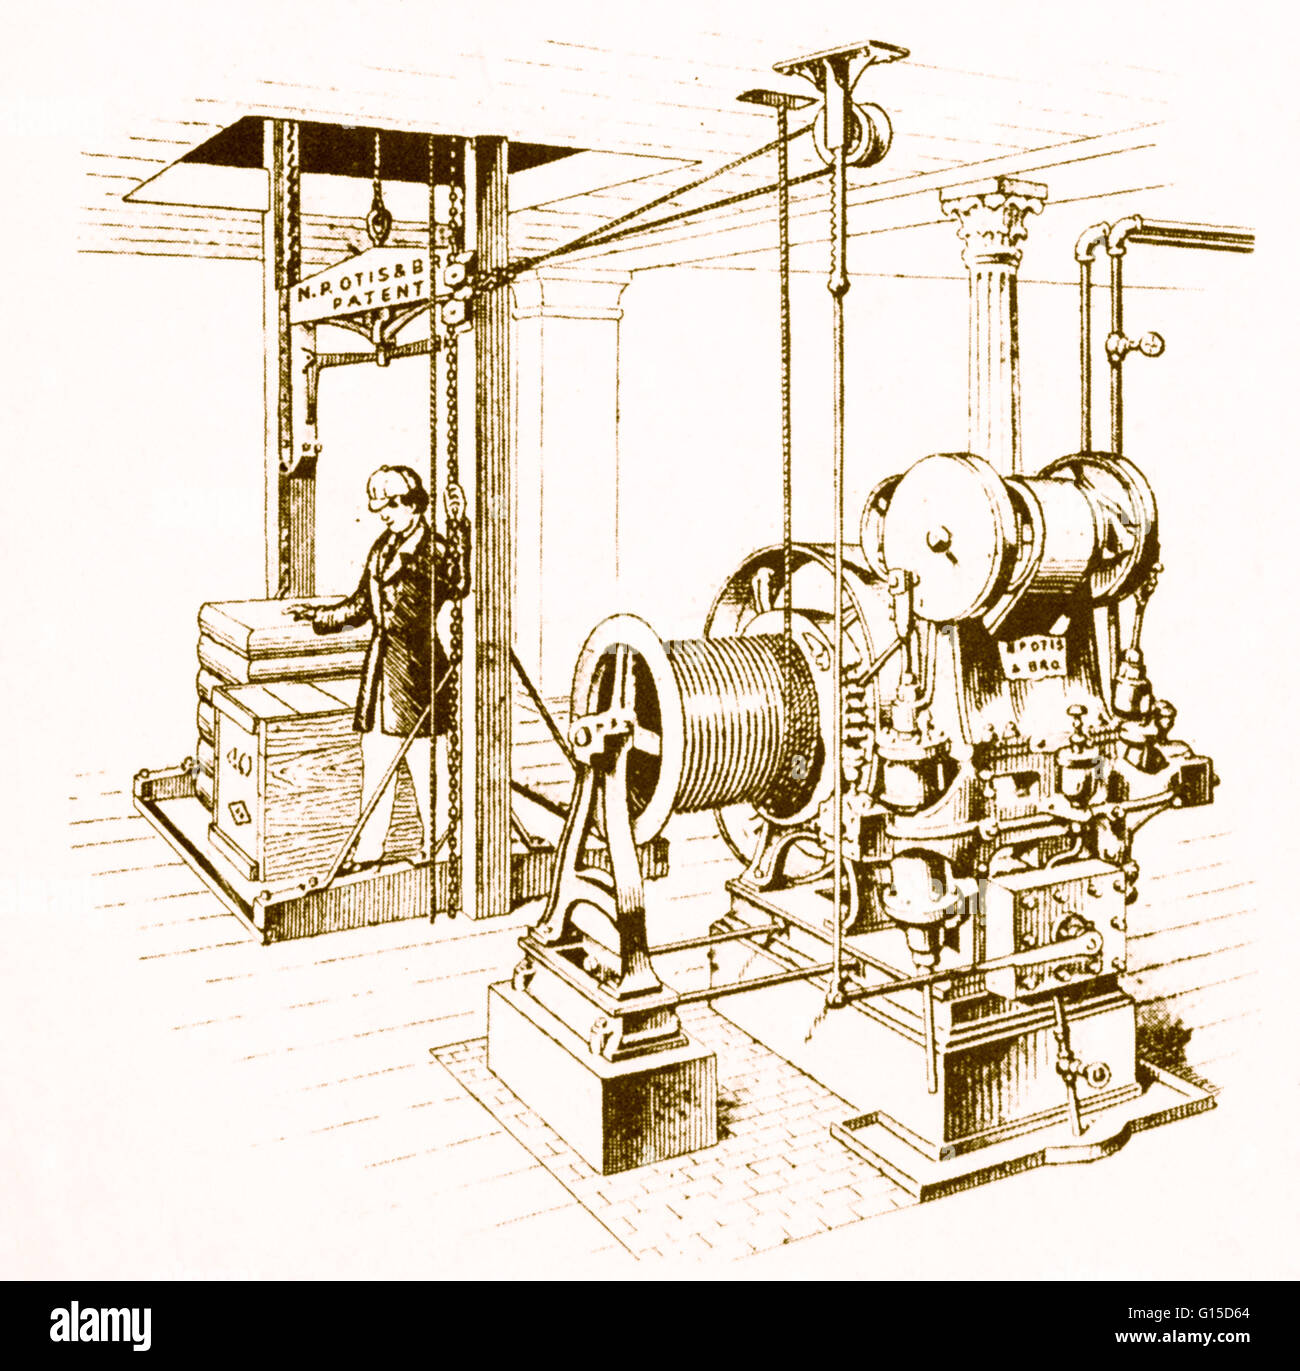 Una illustrazione di una doppia oscillante motore a vapore, creato da Elisha Graves Otis (1811-1861) come un "power plant' esclusivamente per ascensori. Otis, un americano, ha inventato un dispositivo di sicurezza che impediva di ascensori di cadere se il cavo di sollevamento rotto. Foto Stock